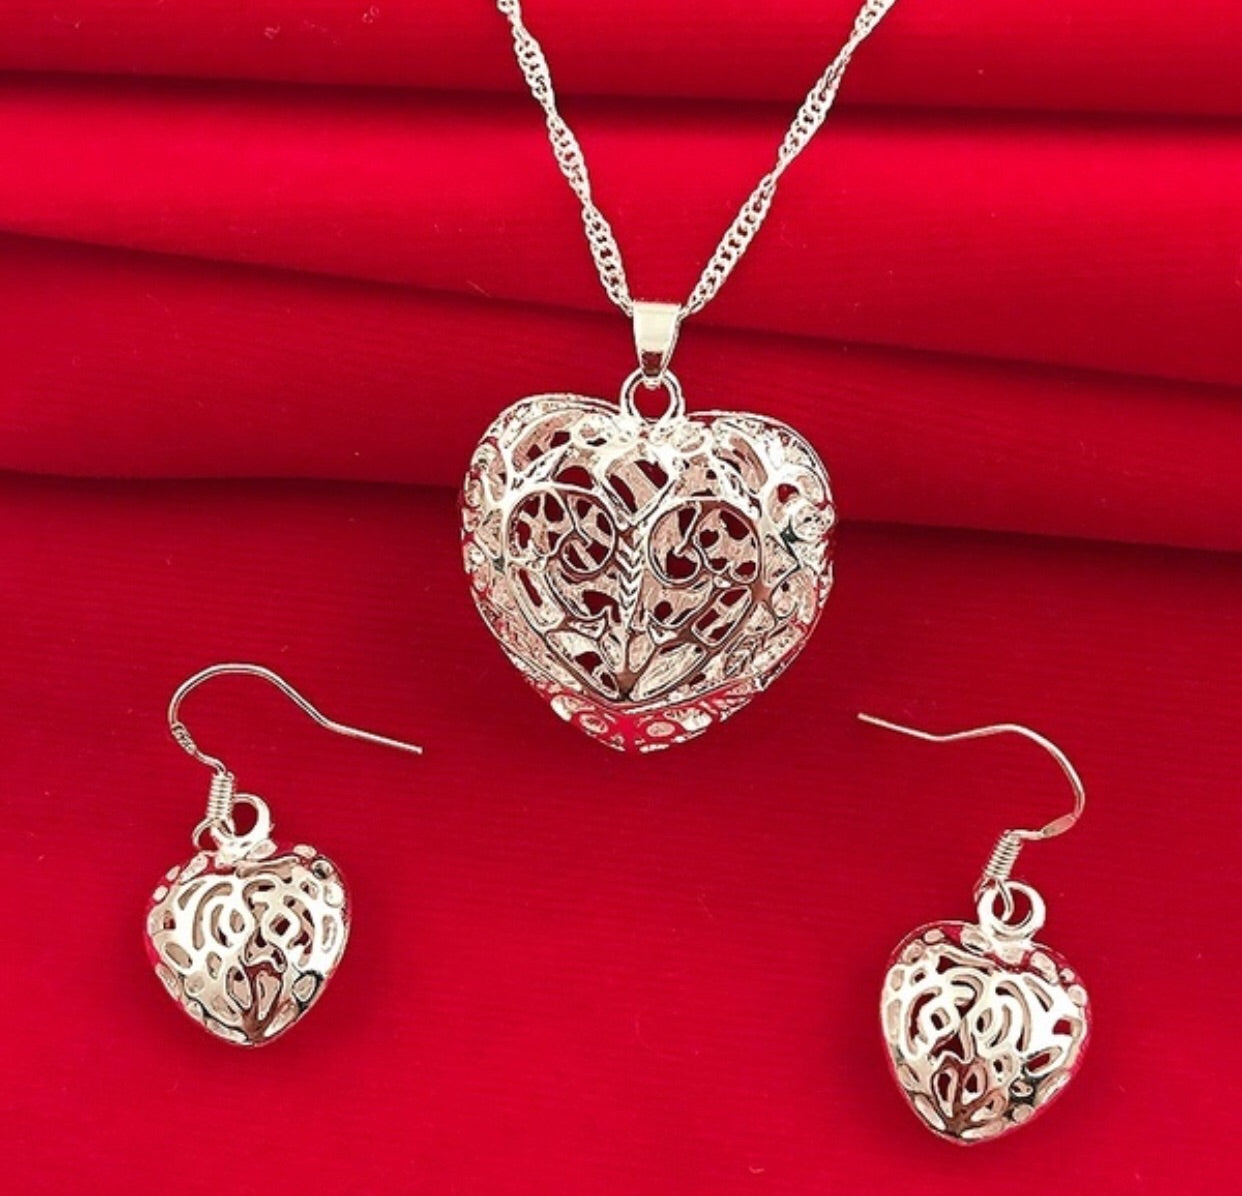 Hollow Heart Silver Jewelry Set - Earrings, Pendant & 16” Chain